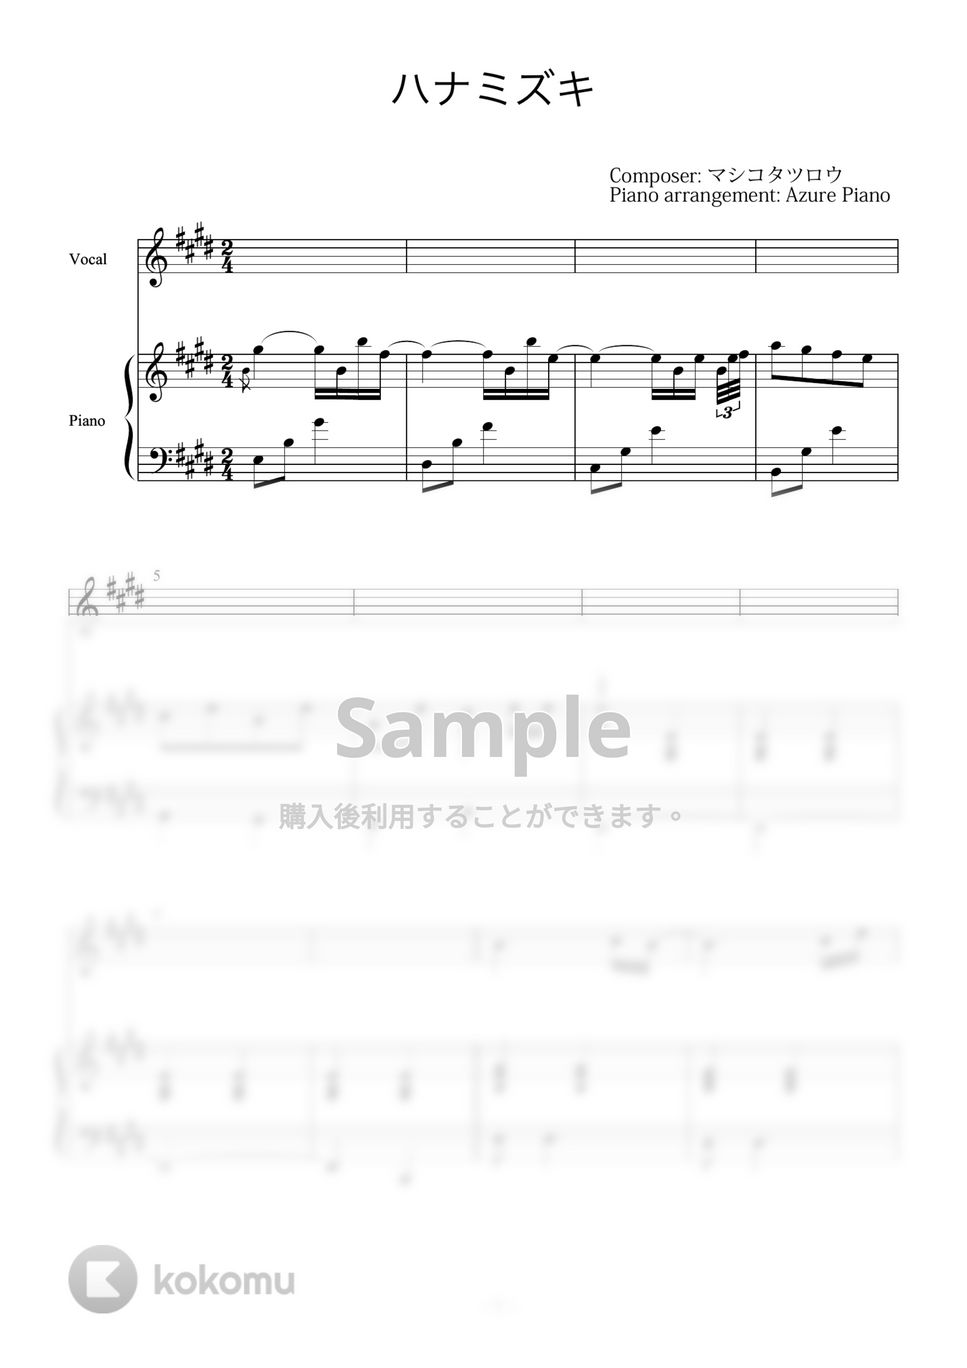 一青窈 - ハナミズキ (ピアノ伴奏楽譜、ボーカル楽譜付) by Azure Piano